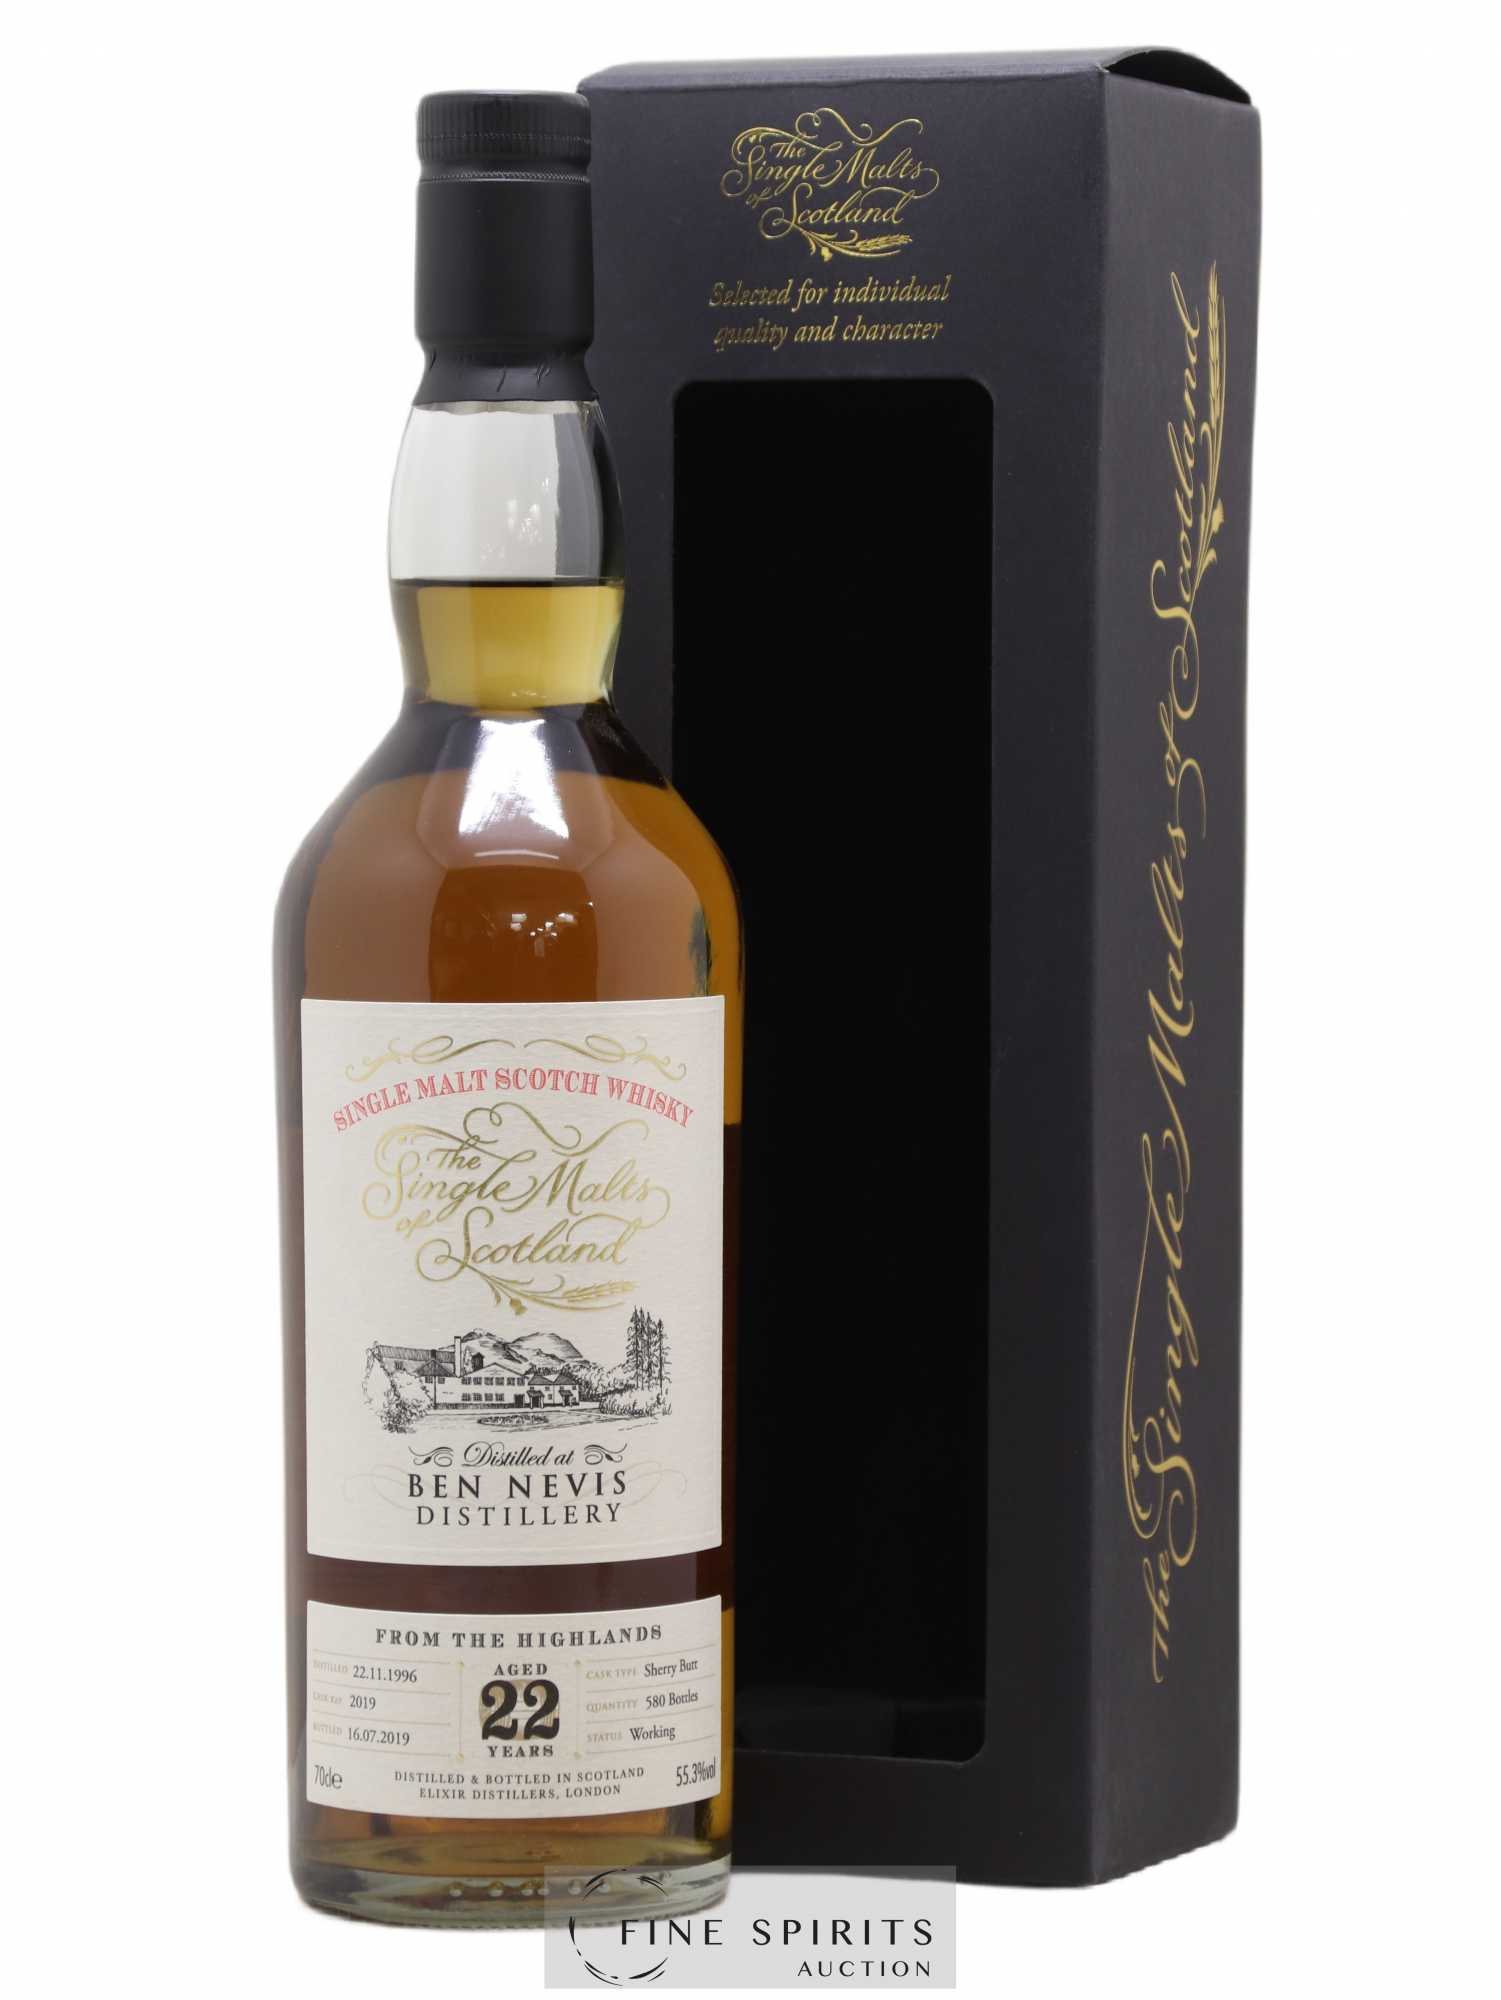 Ben Nevis 22 years 1996 Elixir Distillers Sherry Butt Cask n°2019 - One of 580 - bottled 2019 The Single Malts of Scotland 